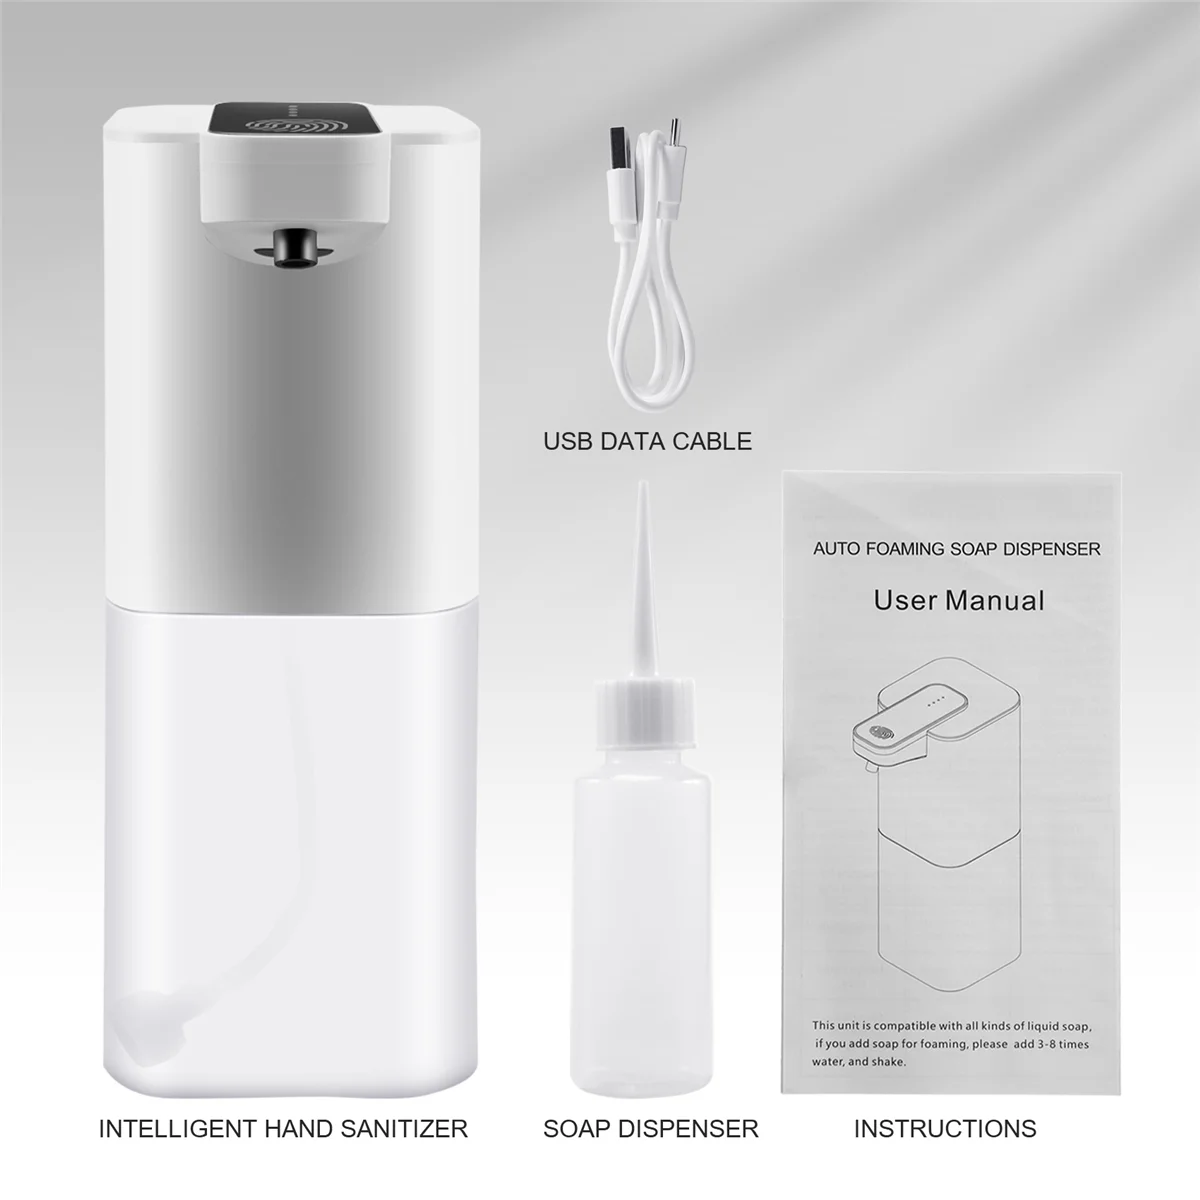 Автоматический дозатор мыла с датчиком, 400 мл, USB перезаряжаемый дозатор пенообразного мыла, IPX4 водонепроницаемый, бесконтактный